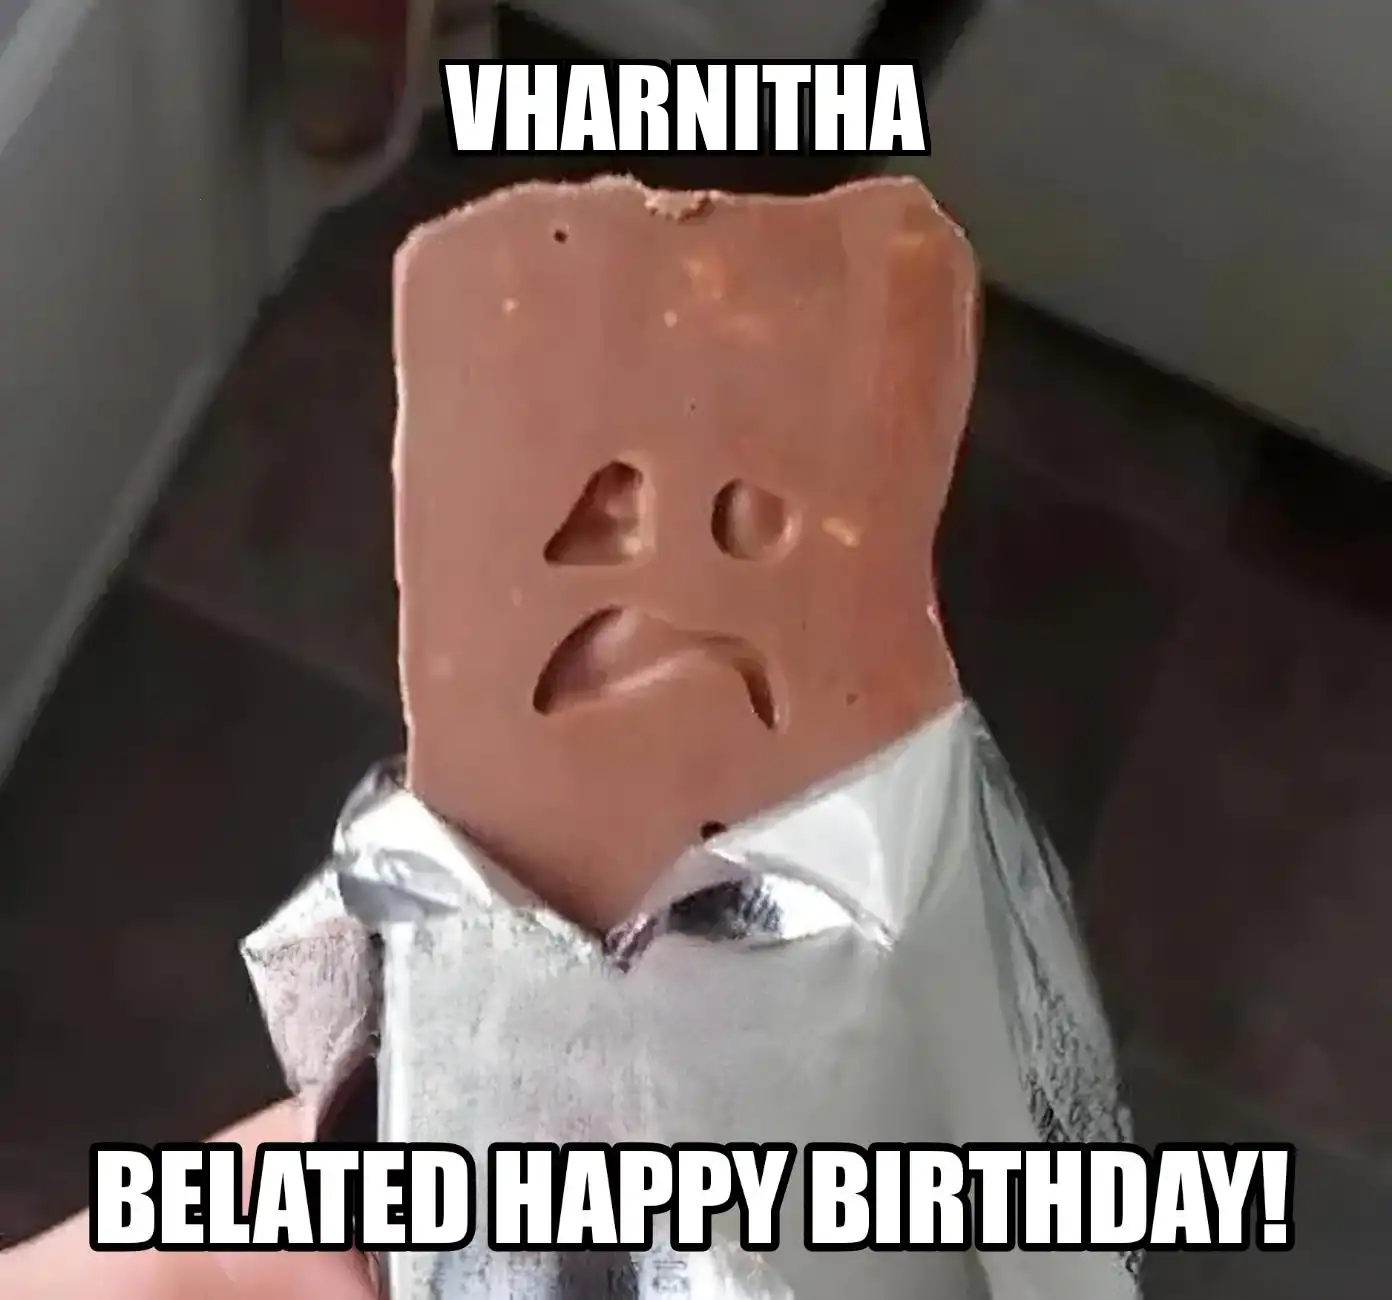 Happy Birthday Vharnitha Belated Happy Birthday Meme